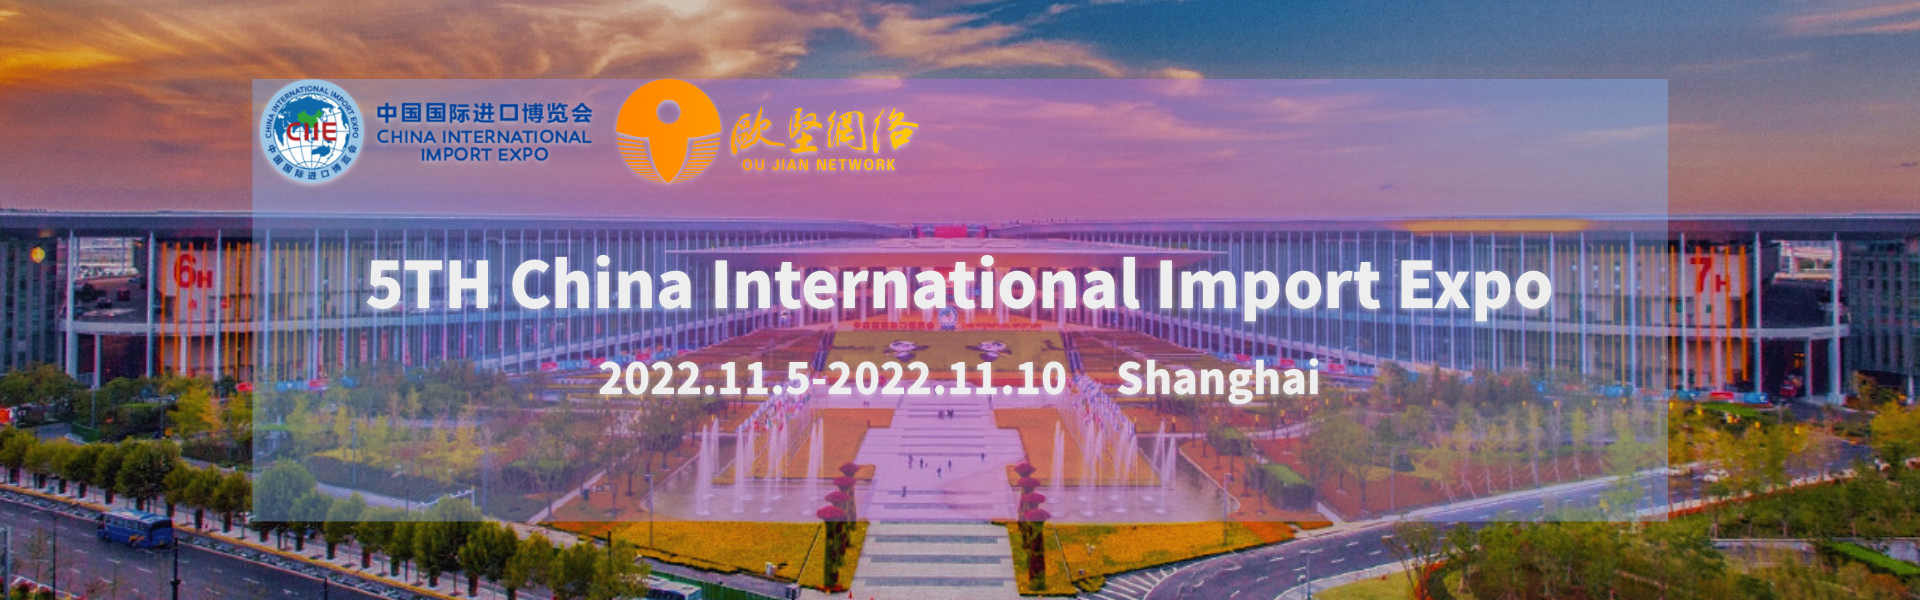 Ķīnas starptautiskā importa izstāde